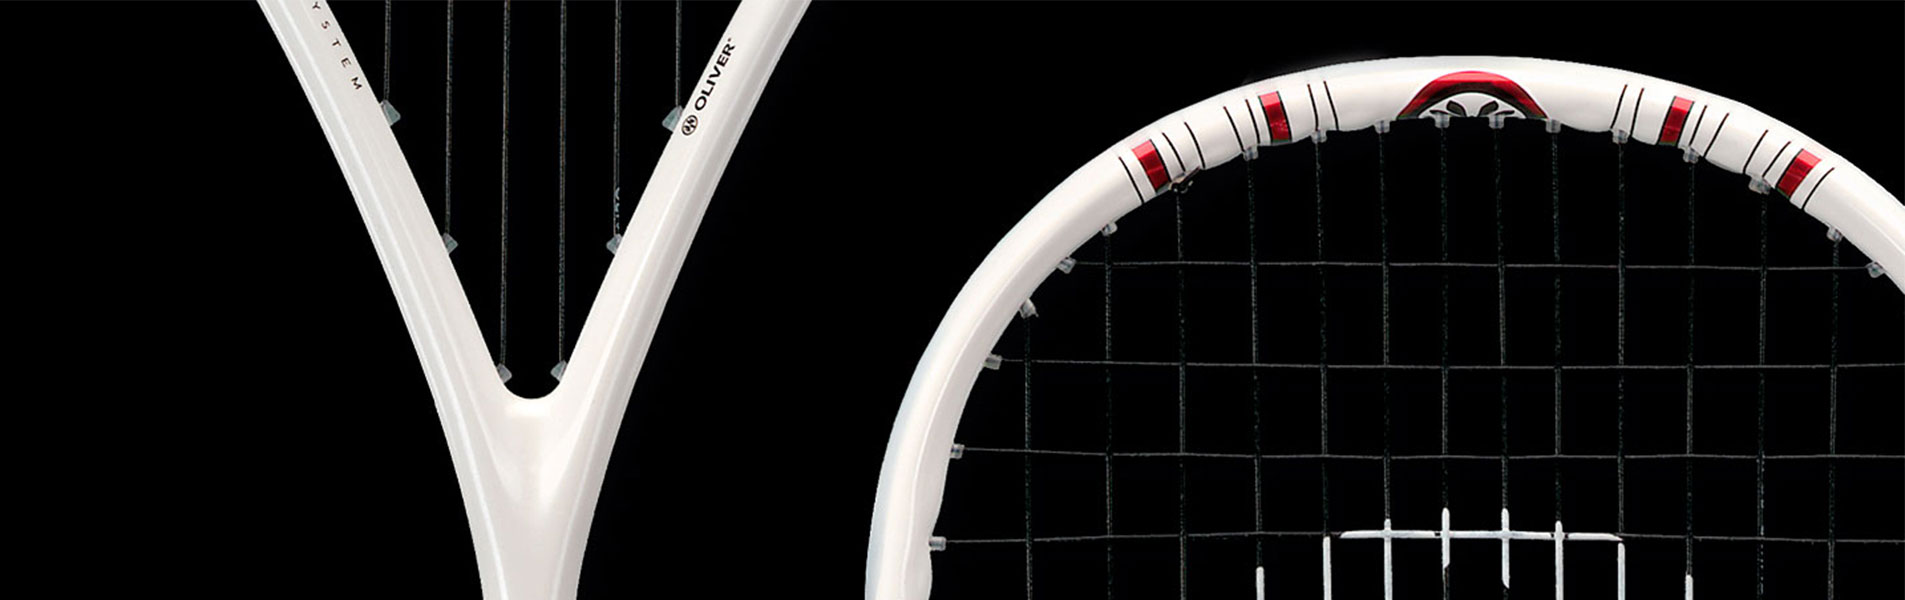 P12 Werbeagentur Heidelberg Referenz OLIVER Squash Racket Design Orca Detail Referenzseite